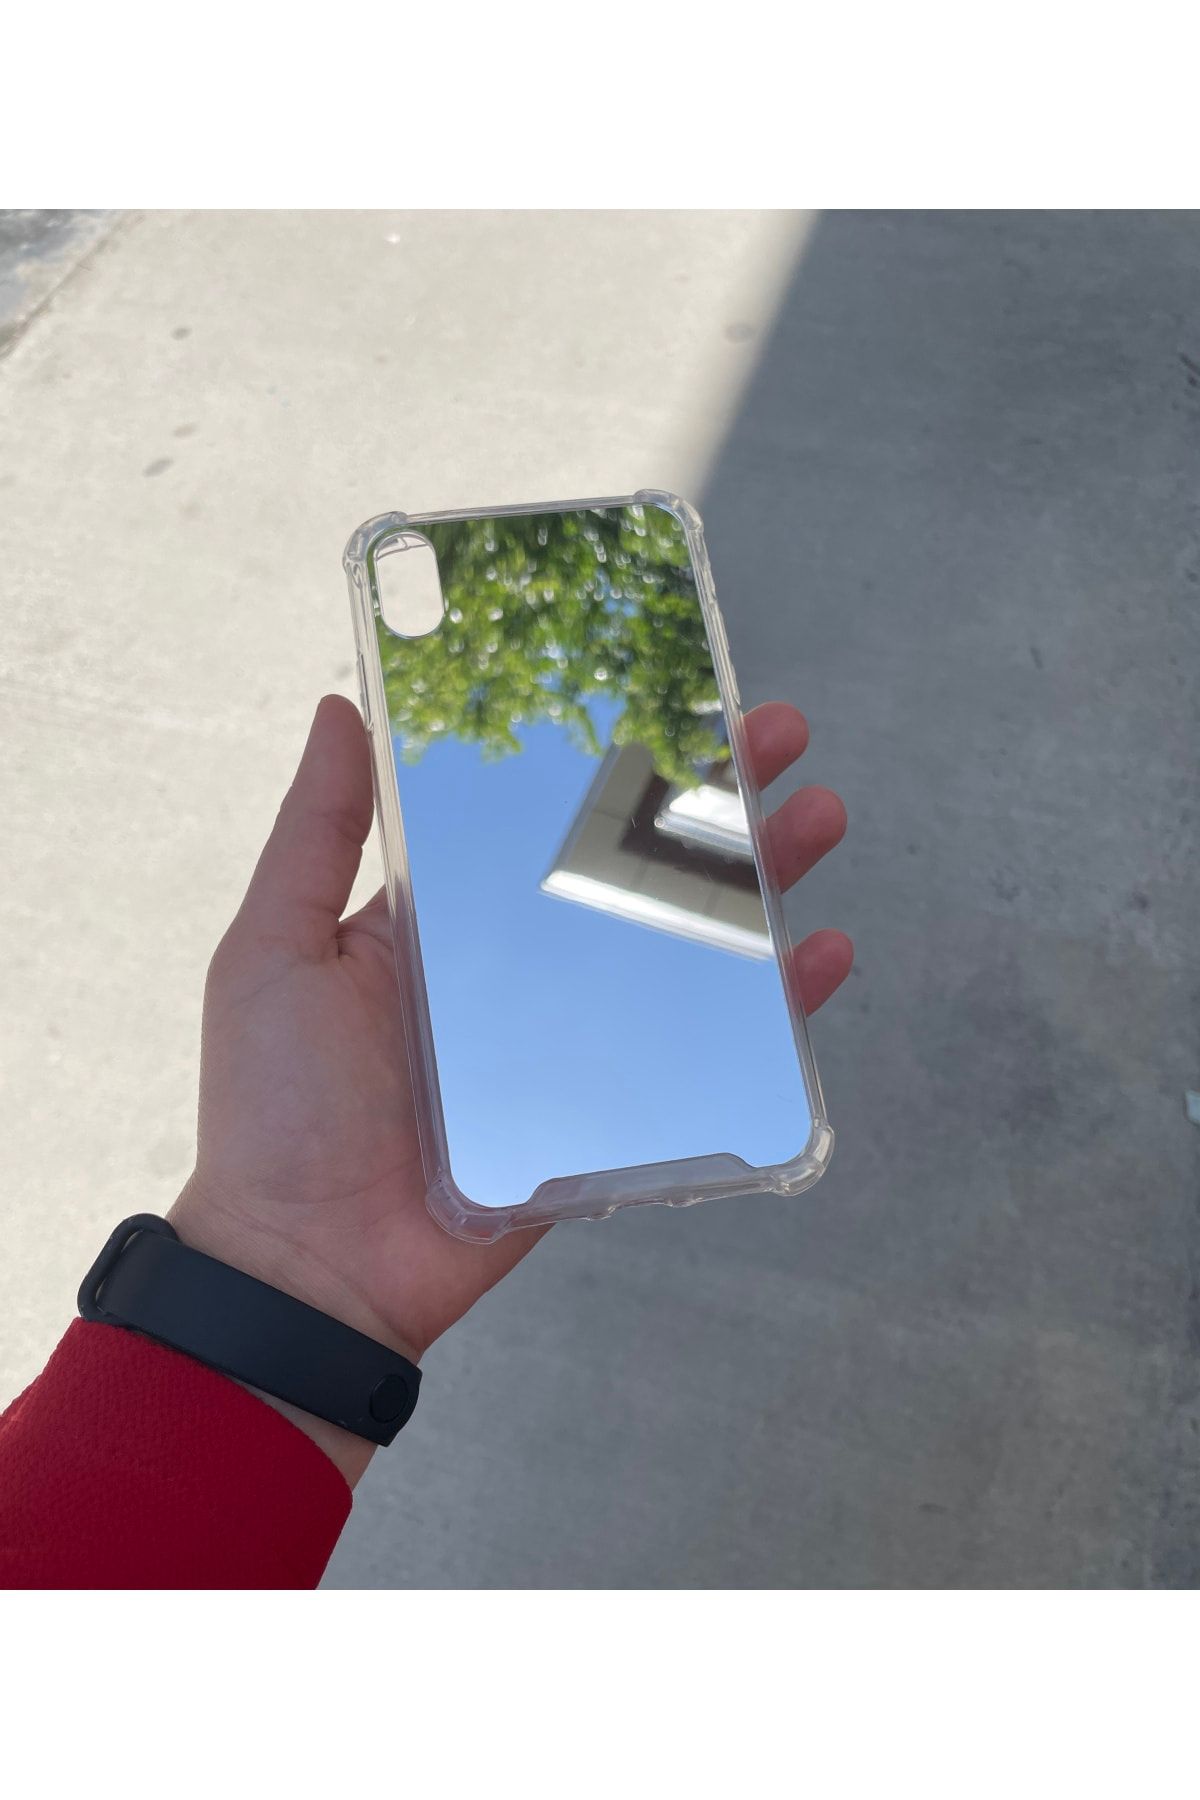 PERAX Iphone Xs Max Gümüş Aynalı Darbe Korumalı Silikon Kılıf Aynaklf000017 Uyumlu